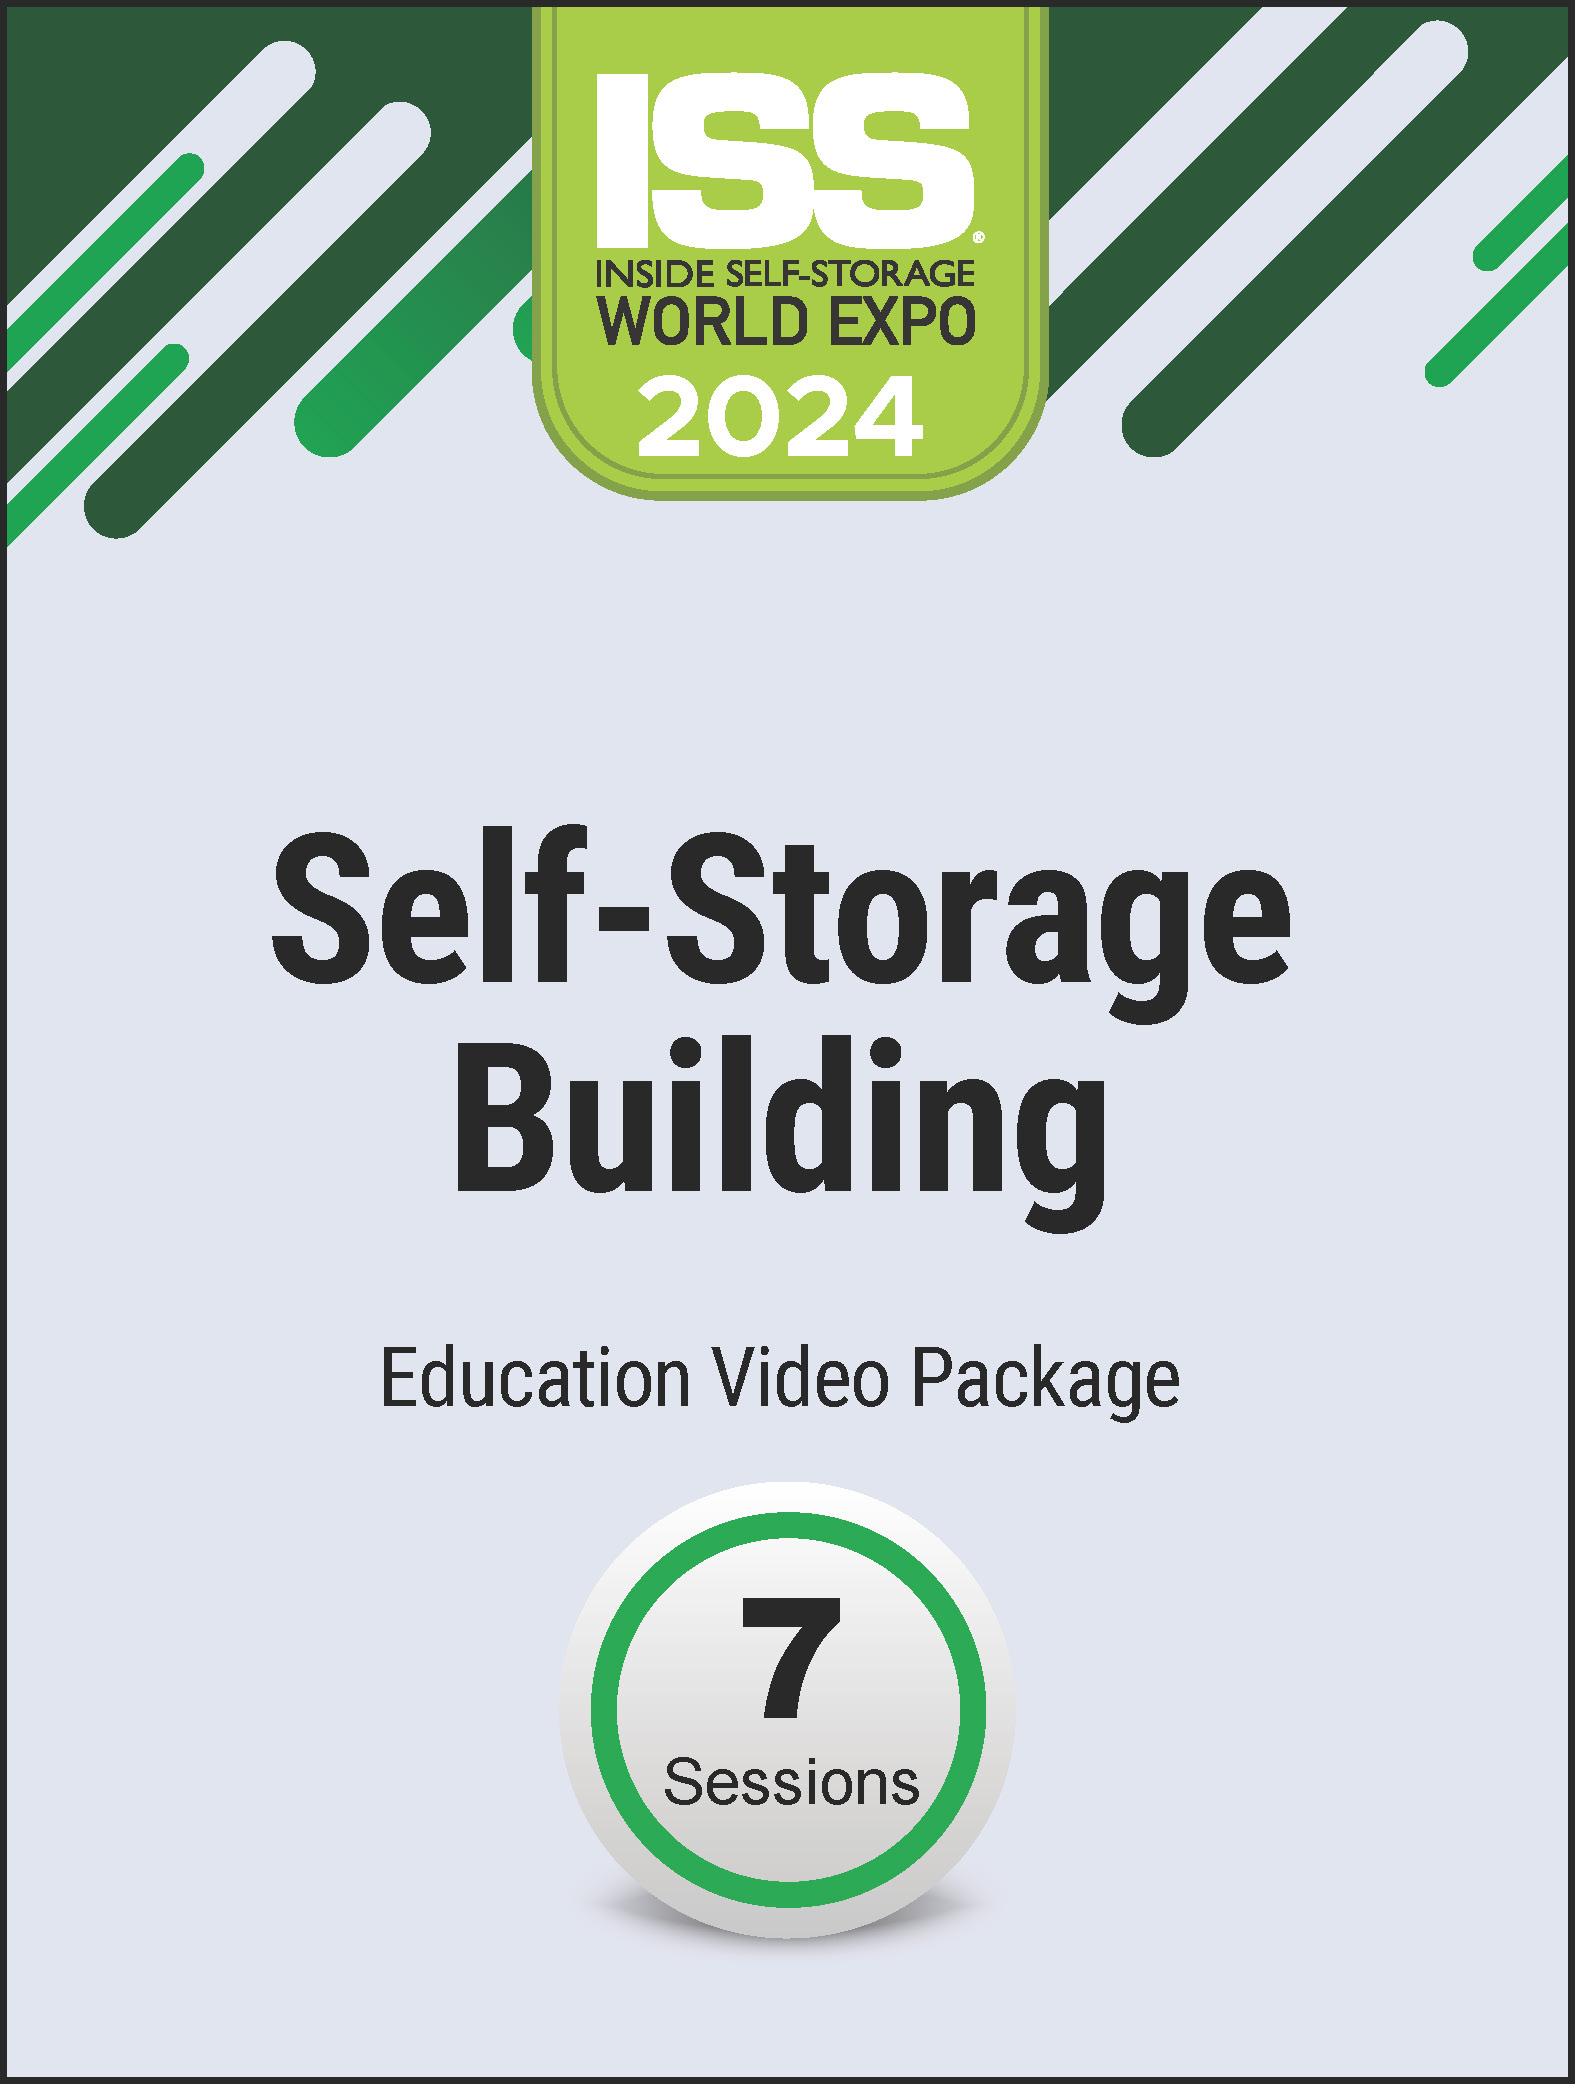 Video Pre-Order PDF - Self-Storage Building 2024 Education Video Package